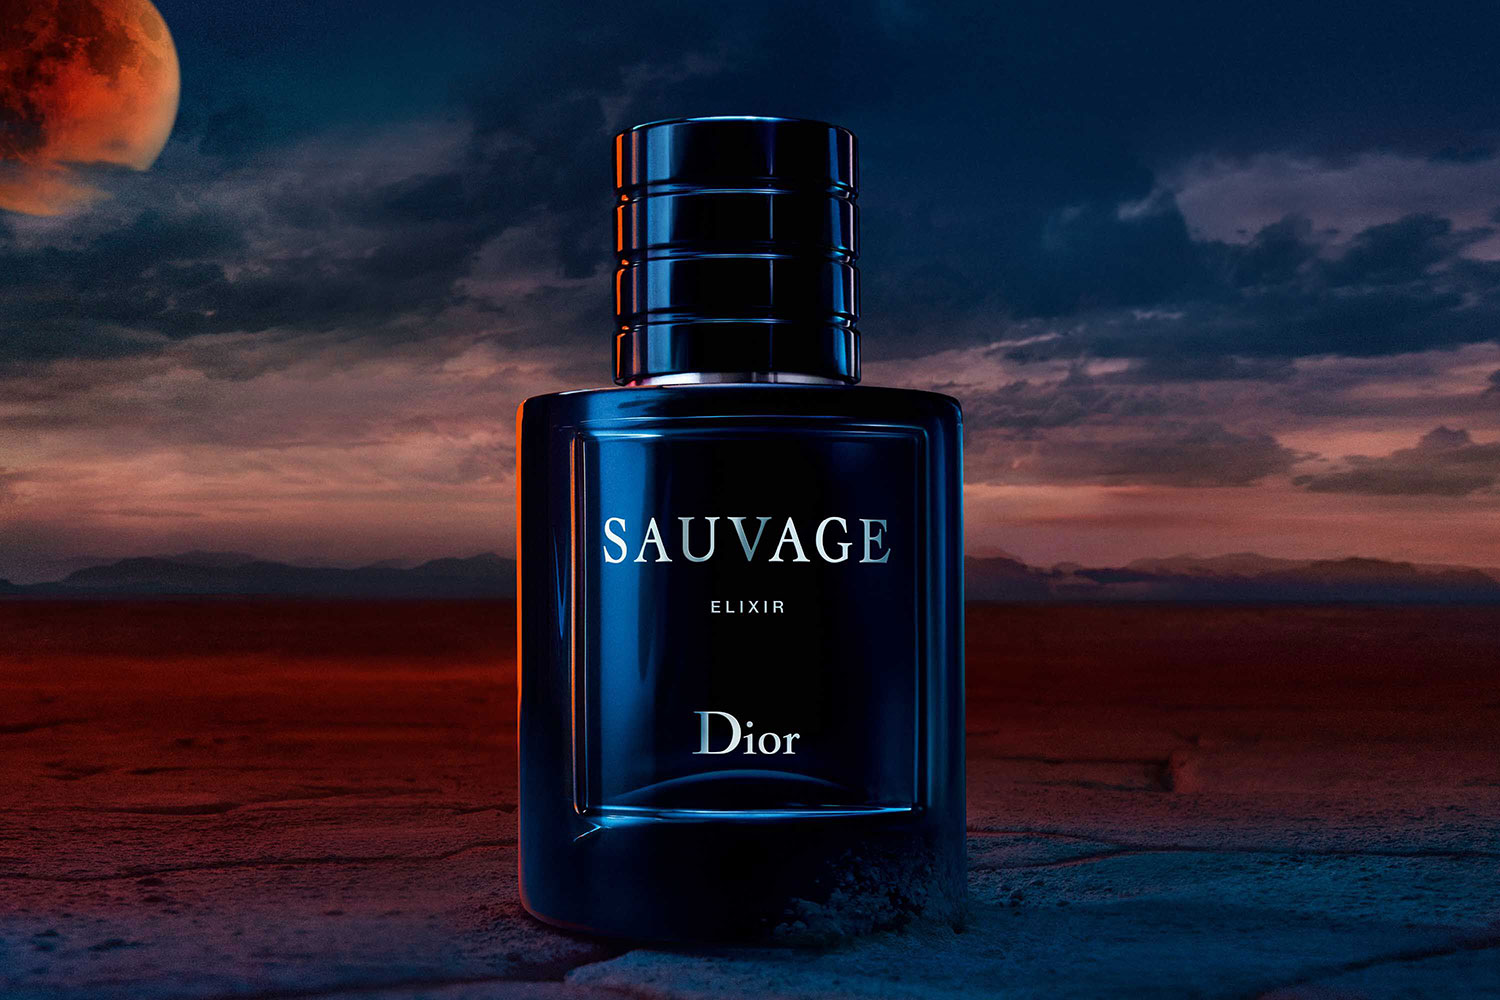 Dù Hollywood tẩy chay Johnny Depp, Dior vẫn ủng hộ anh với chiến dịch Eau Sauvage Elixir